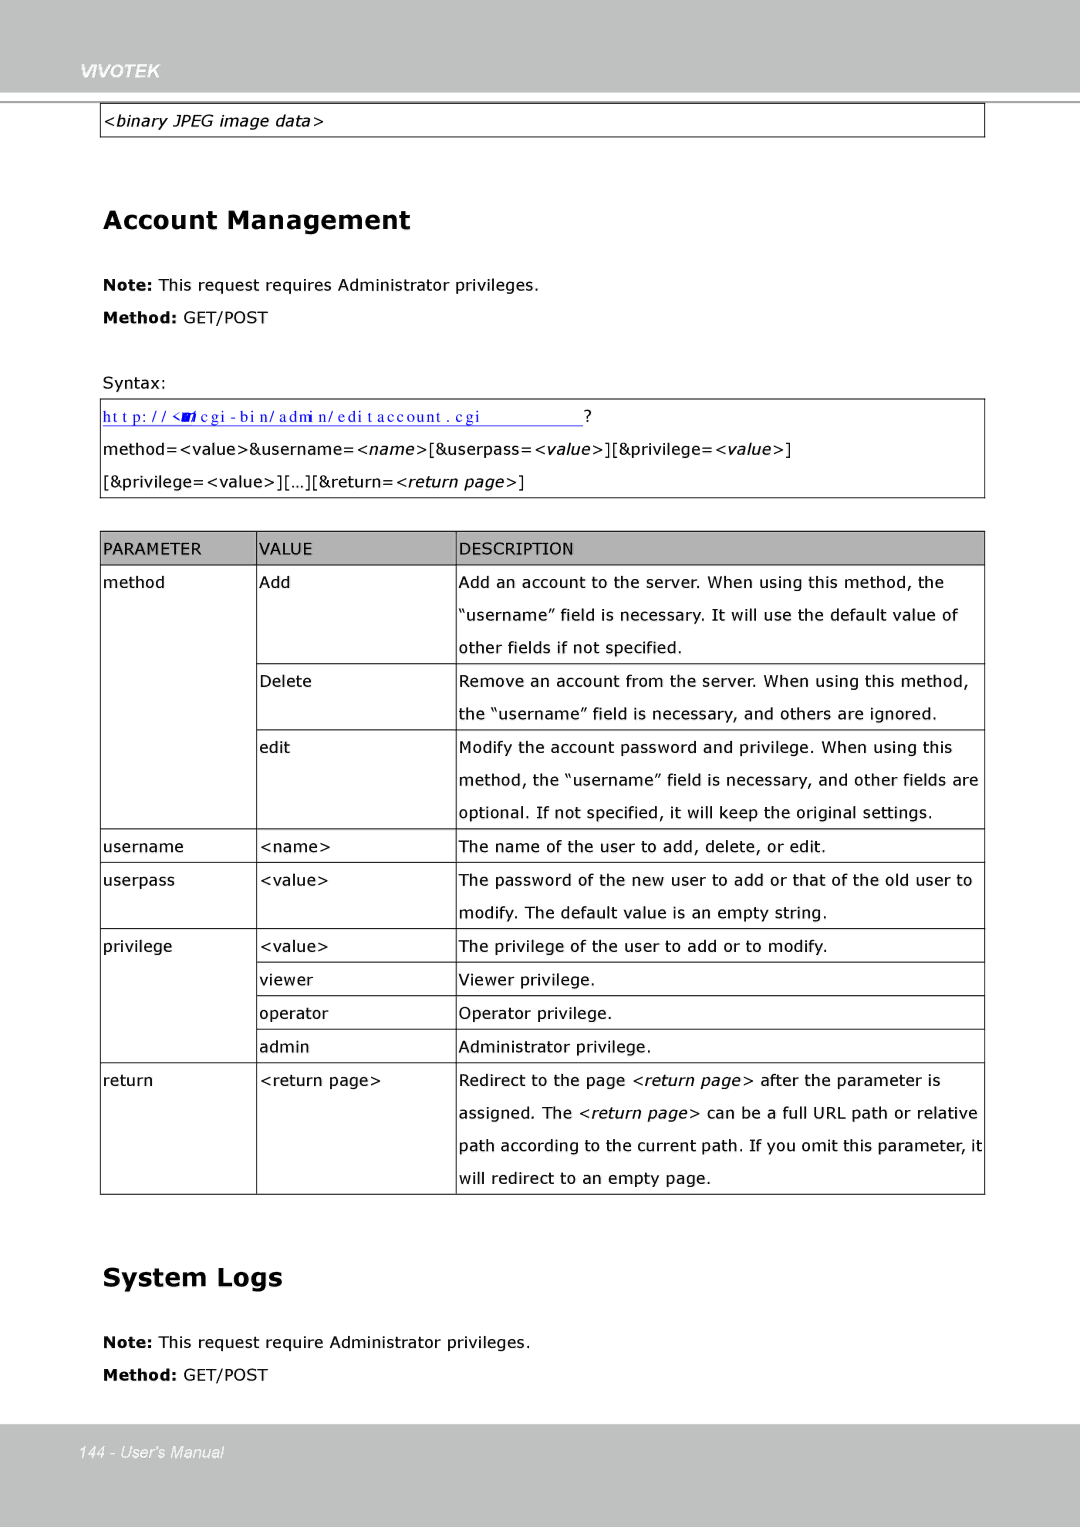 Vivotek FD8361L manual Account Management, System Logs 